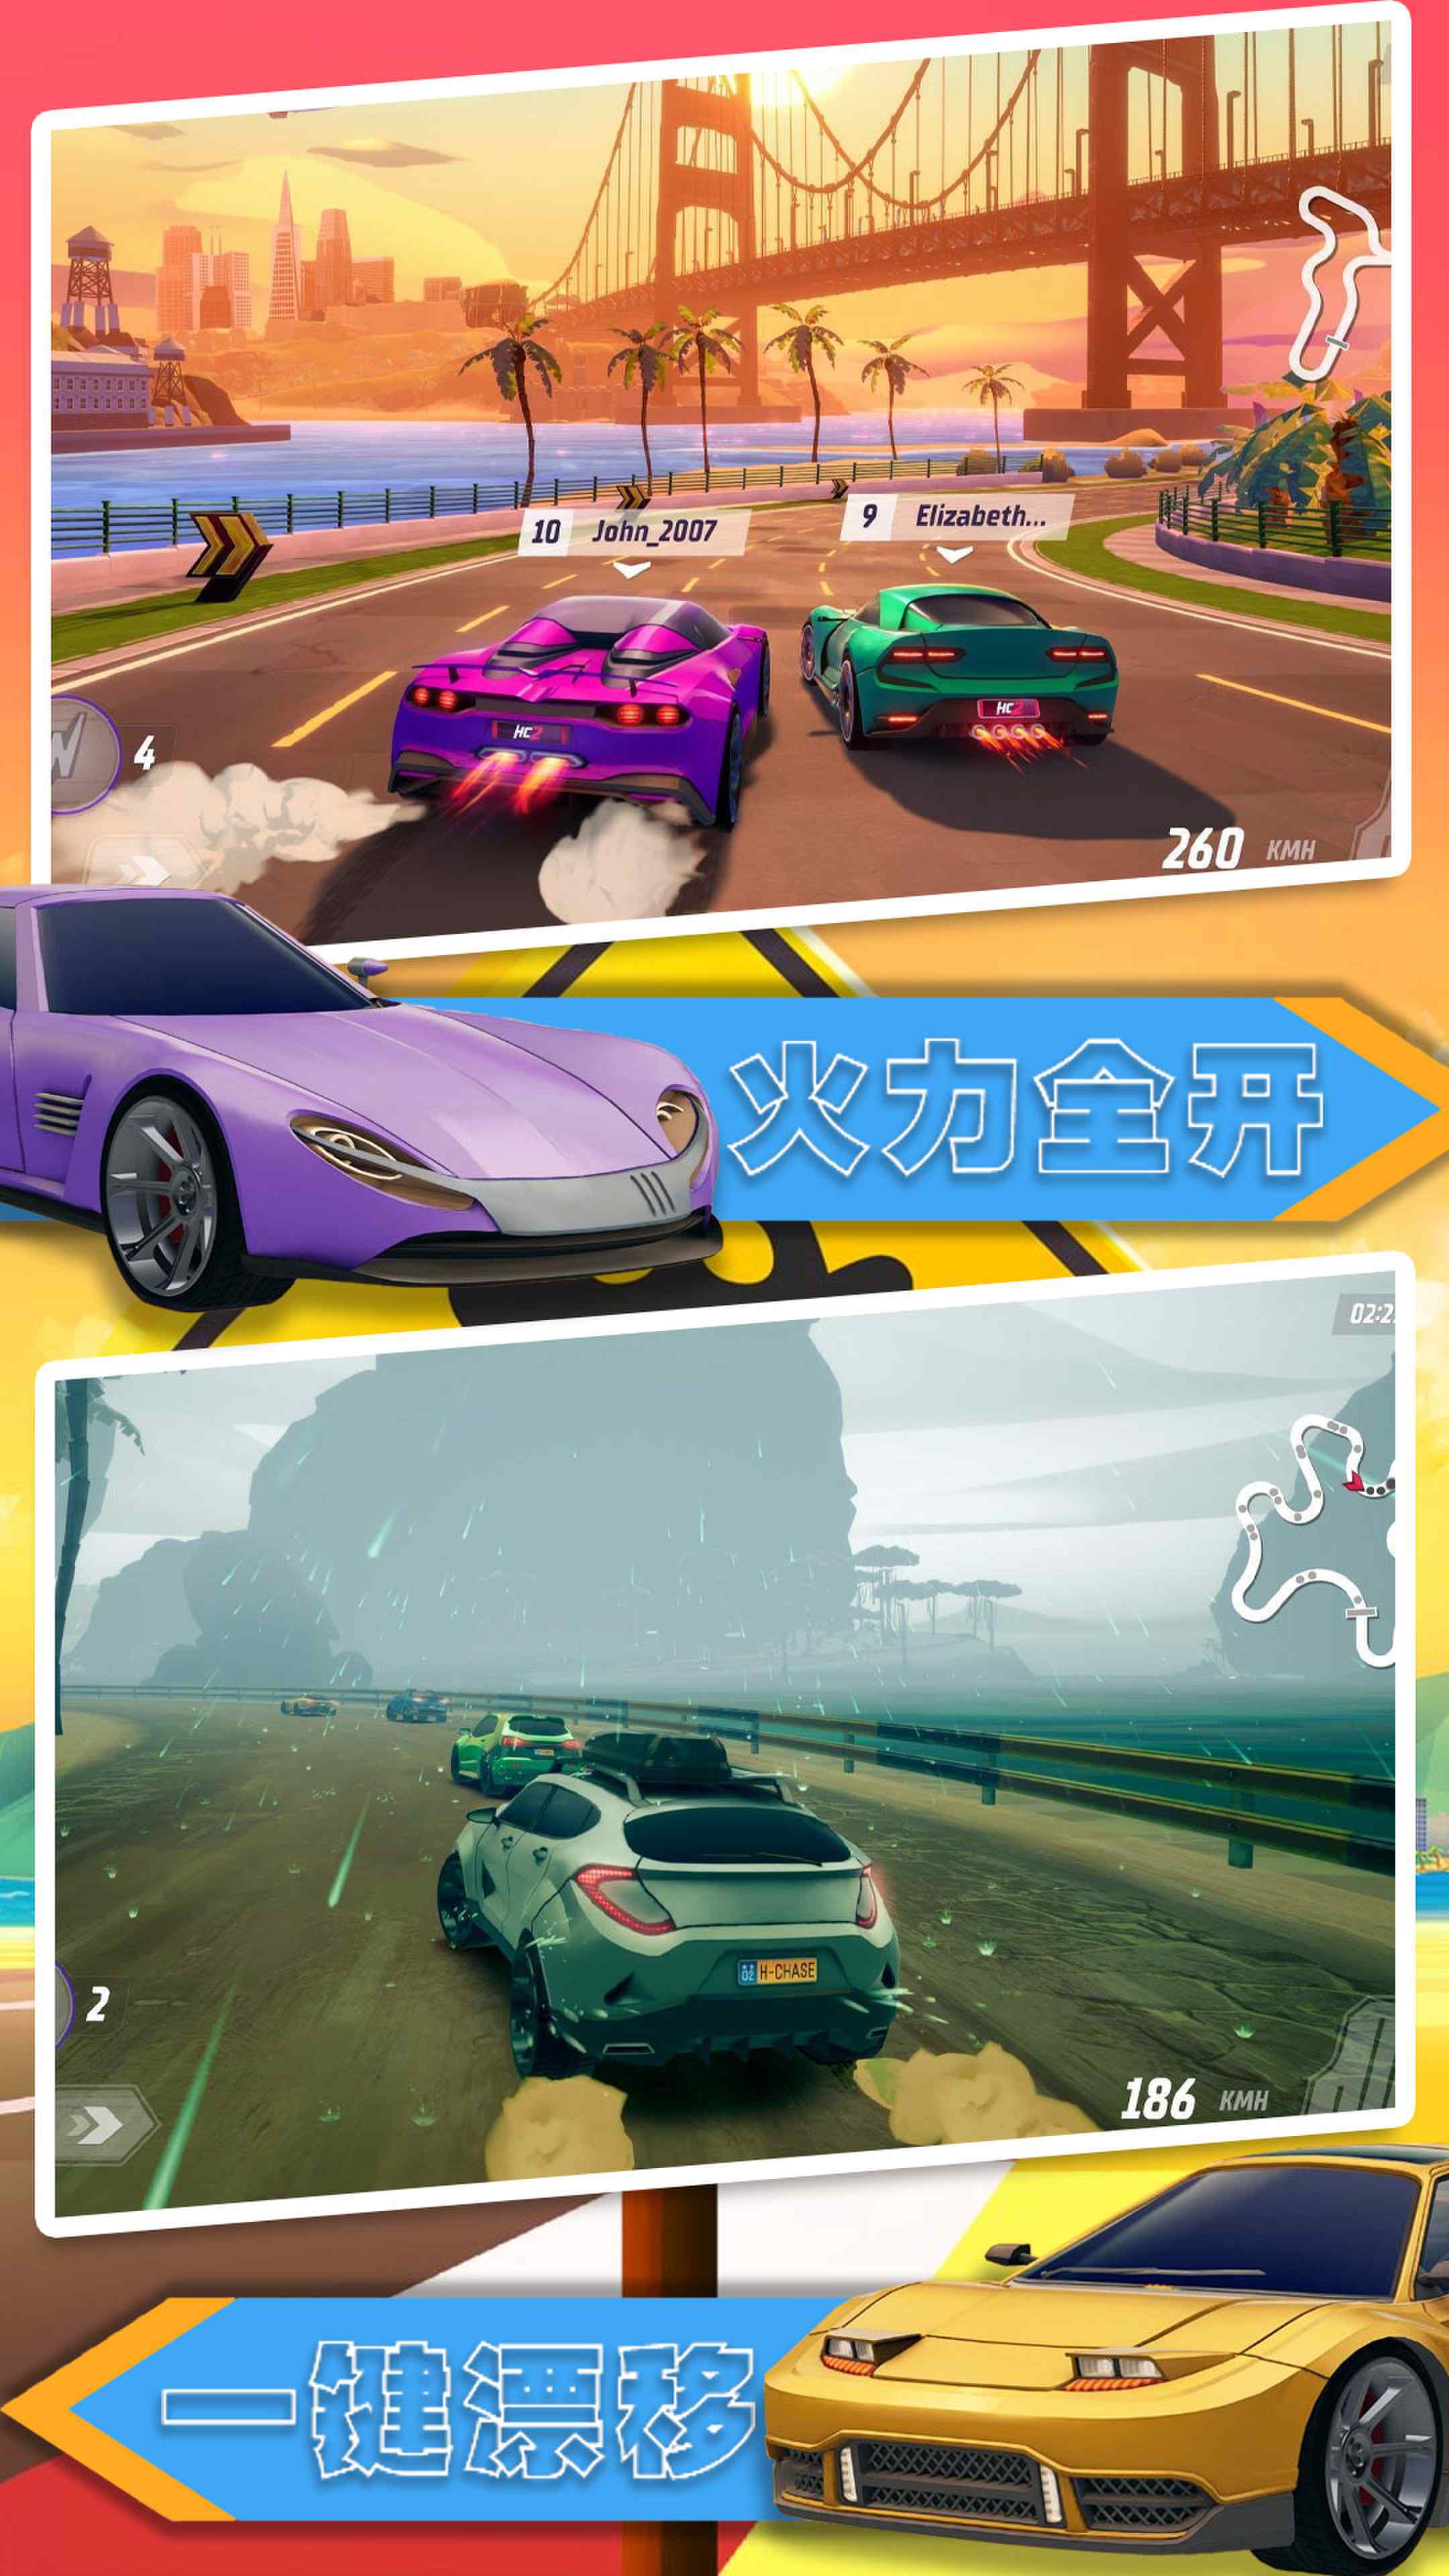 汽车极速大赛下载安装下载,汽车极速大赛游戏下载安装 v1.0